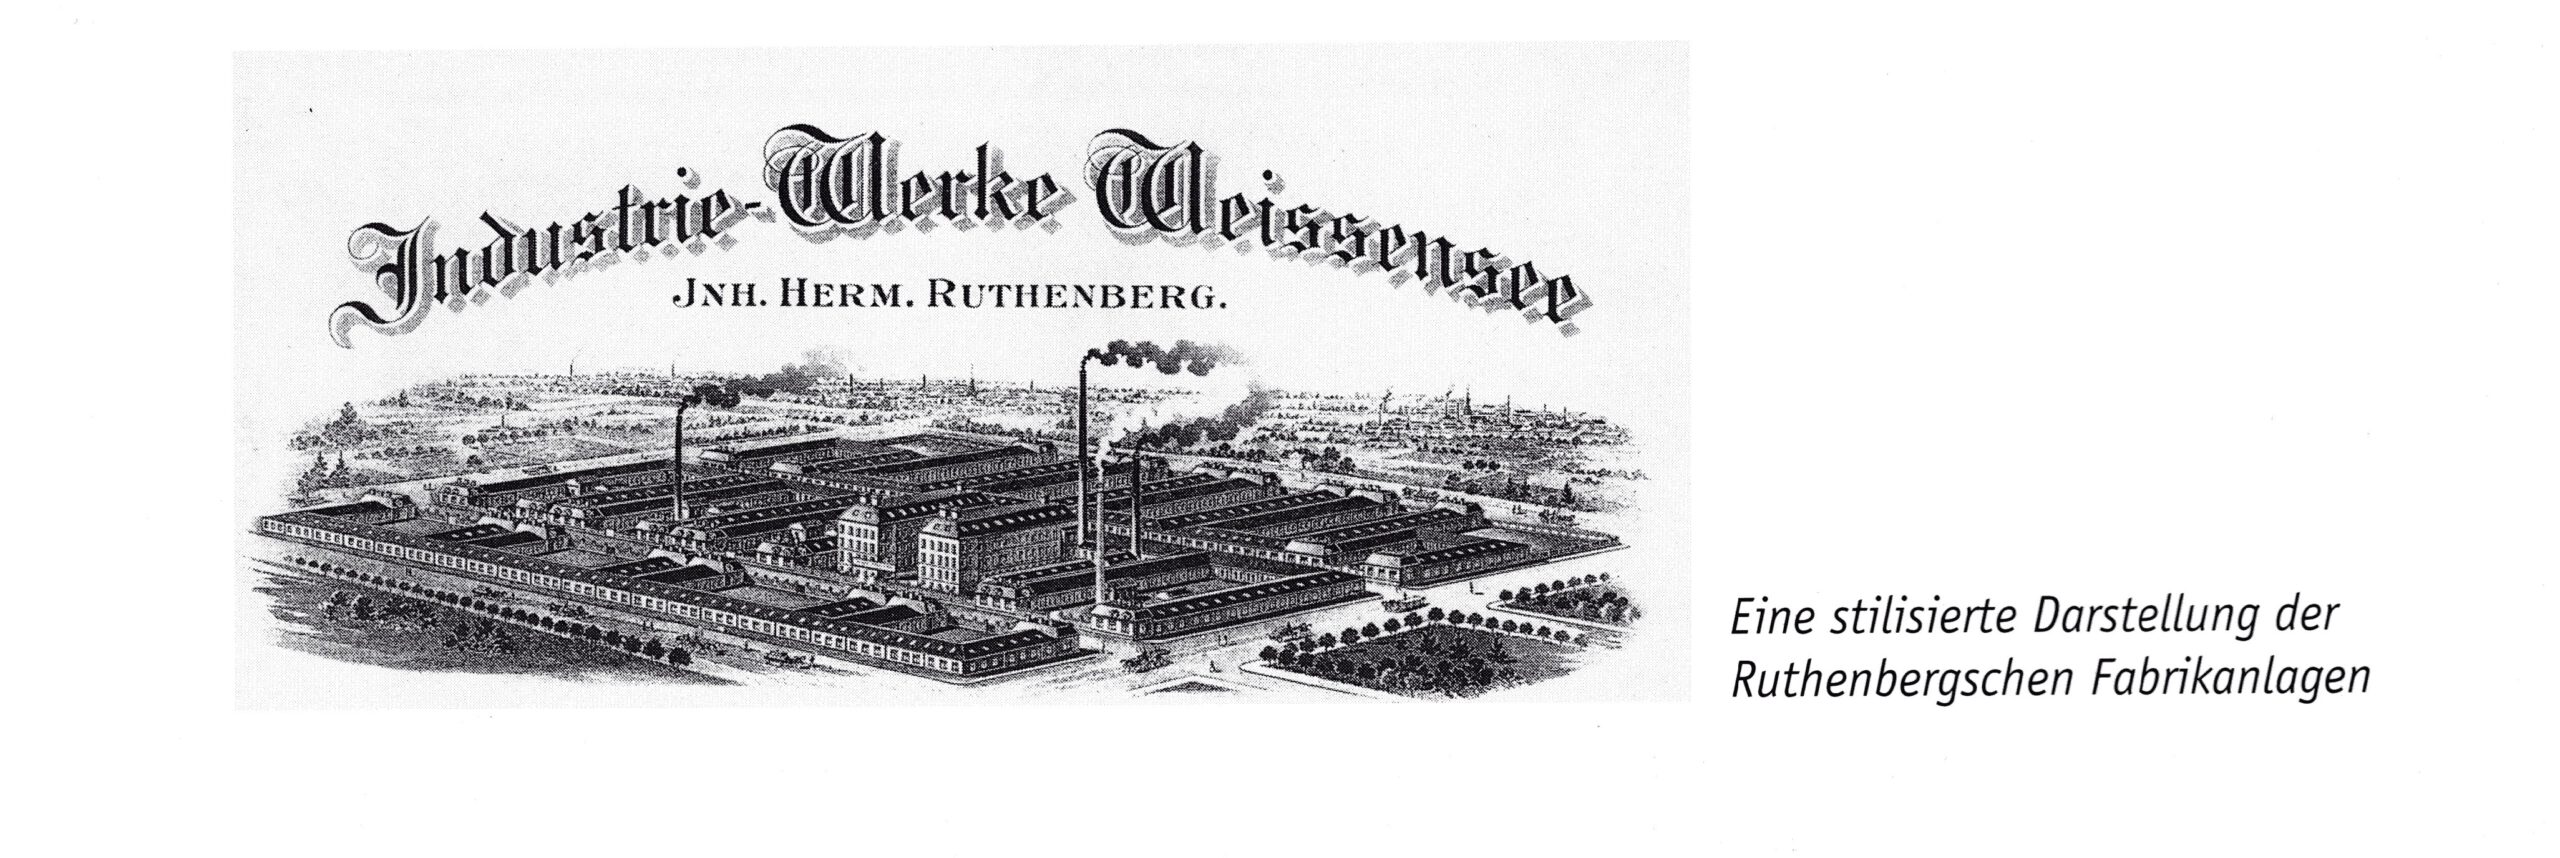 Berlin-Weißensee-Spaziergang-Ruthenbergsche Fabrikanlagen-Lehderstraße-Copyright Heimatfreunde e.V.